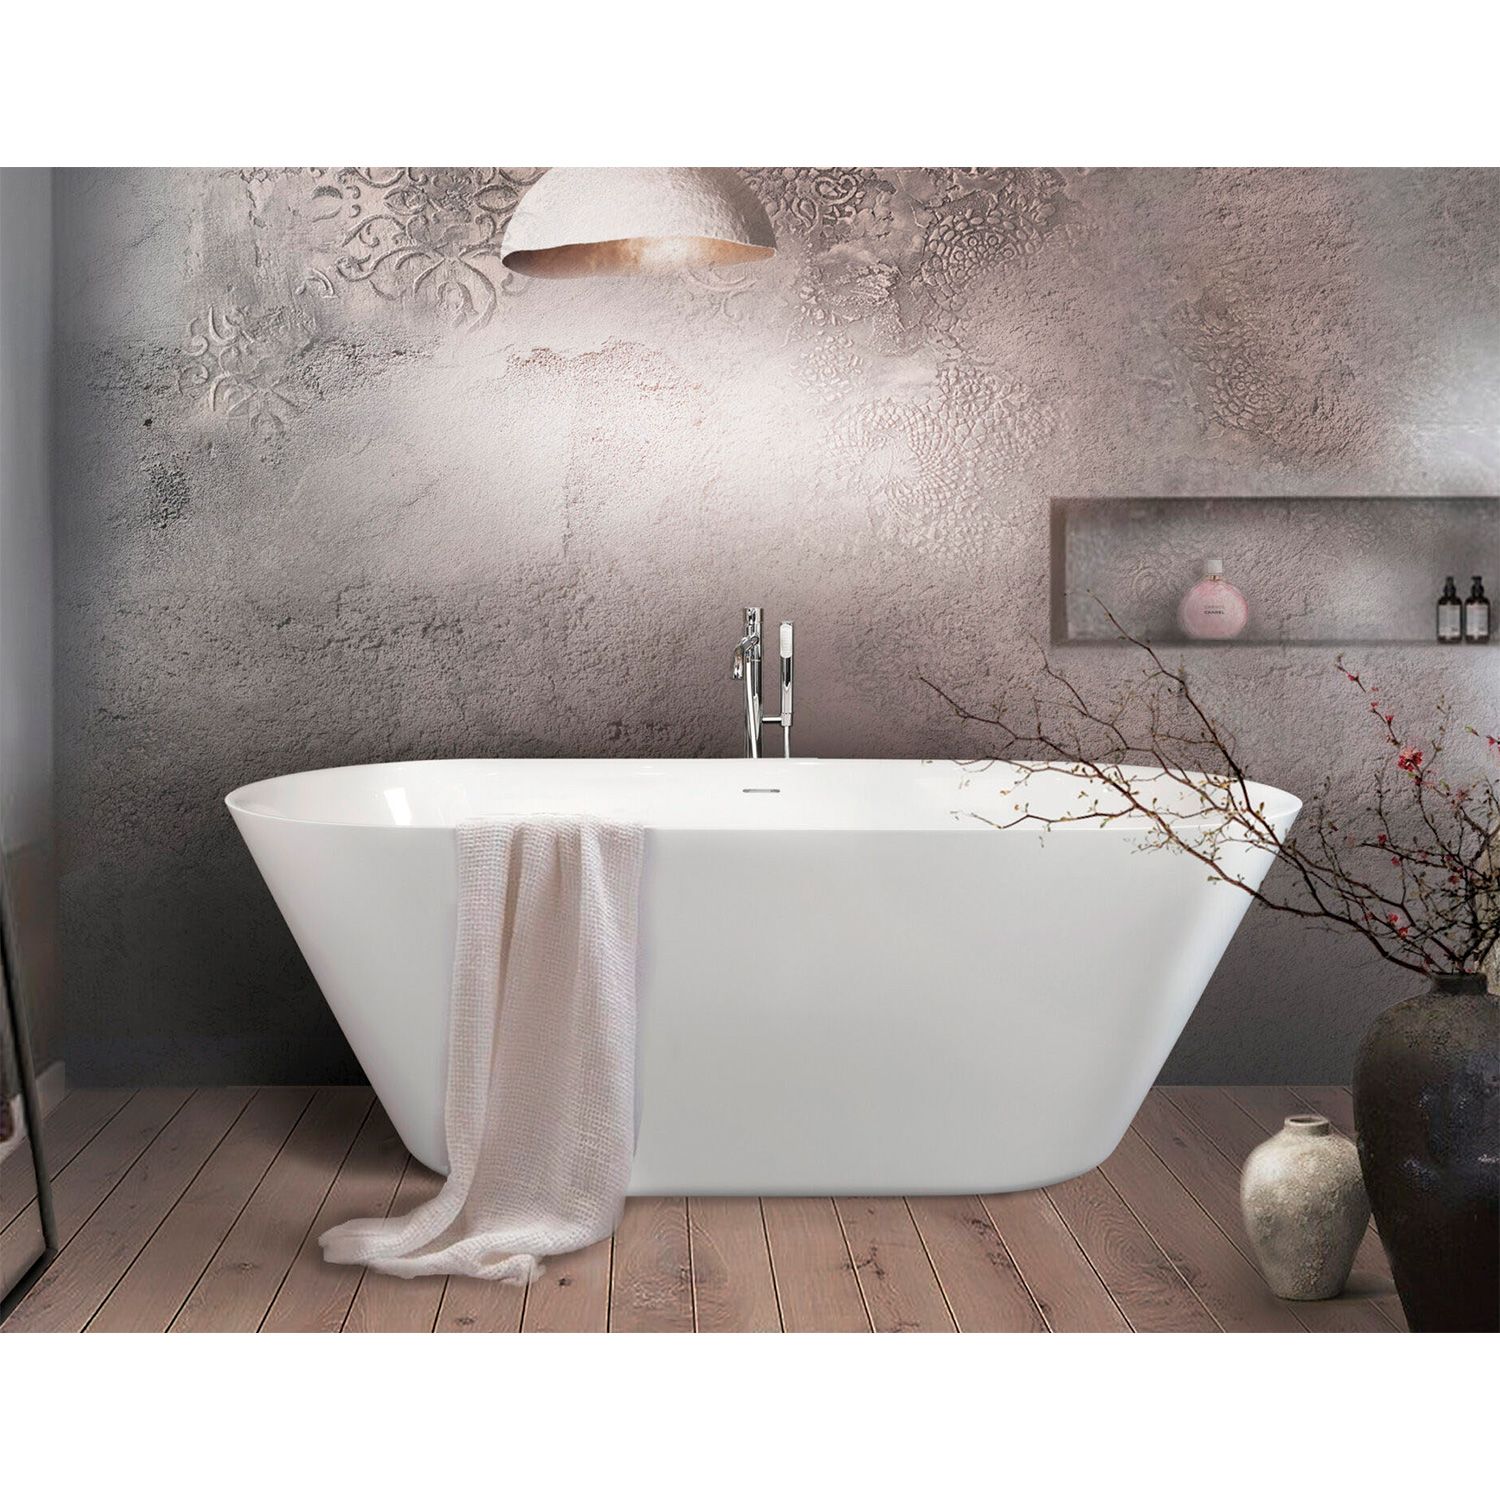 Ванна окремостояча зі штучного каменю 1670 x 725 мм VASTO/00 Storia, з інтегрованим сифоном, колір білий глянець